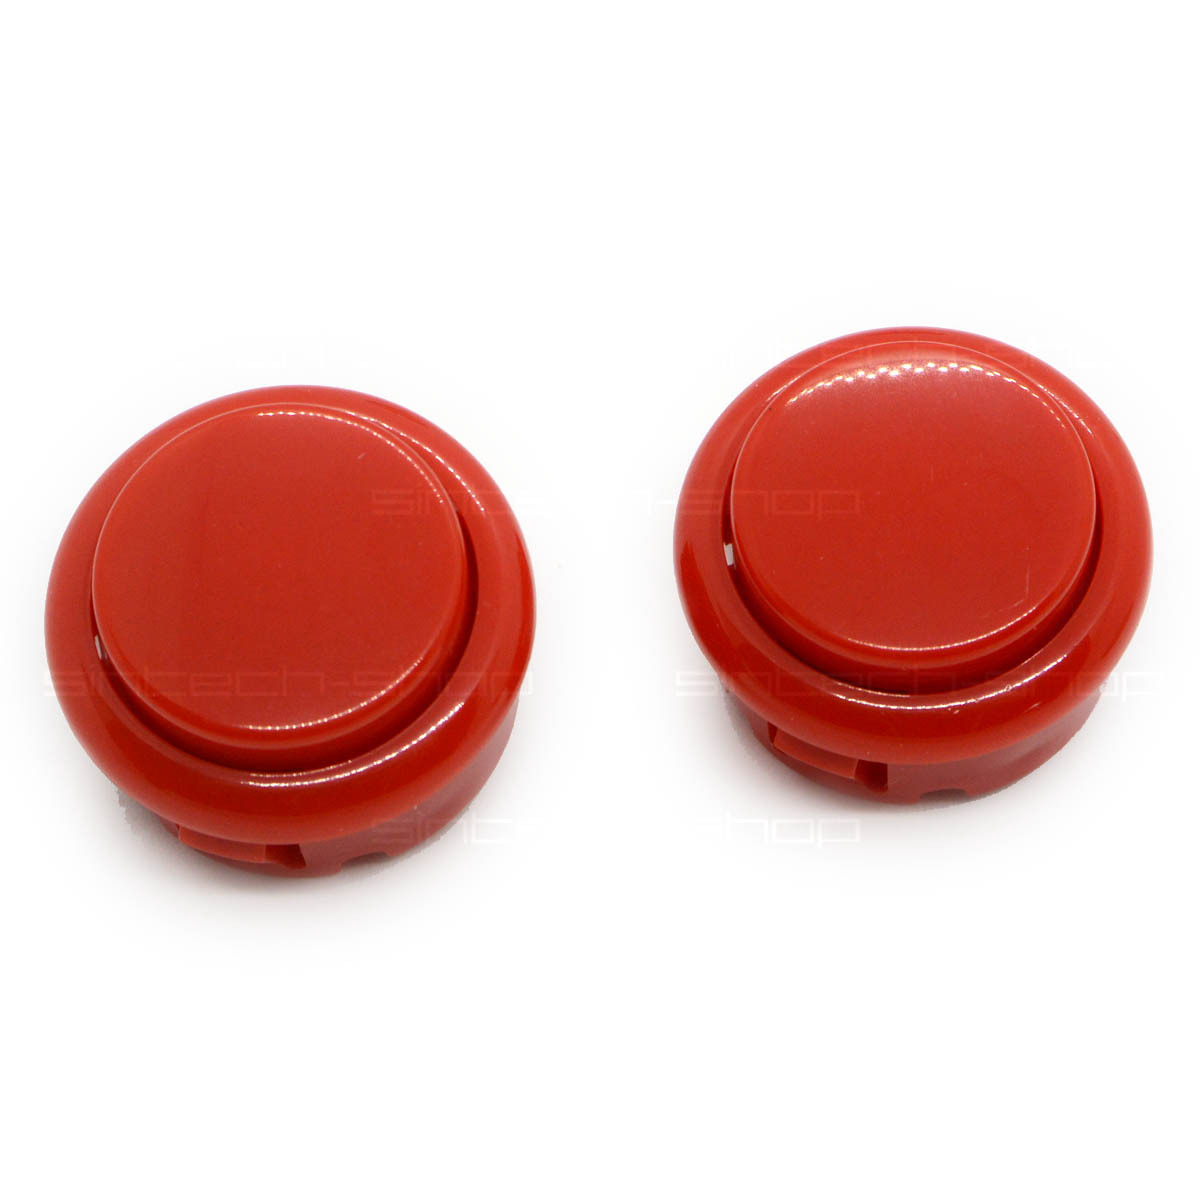 Náhradní tlačítka Fire pro ArcadeR joystick, 2 ks různé barvy Barva: Červená